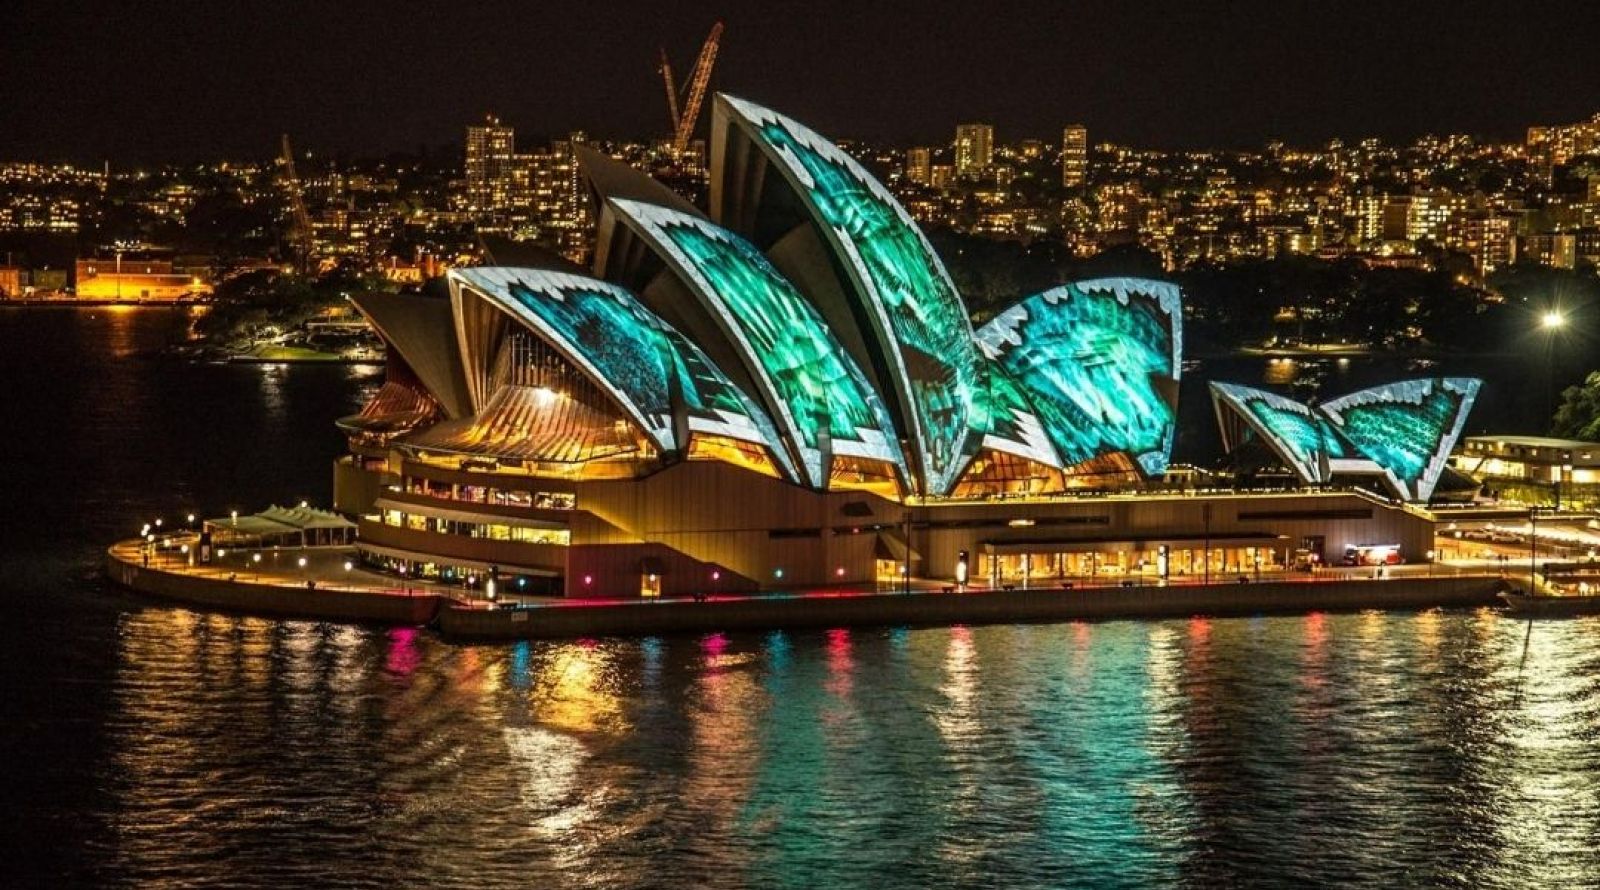 Vivid Cruise - Sydney Opera House